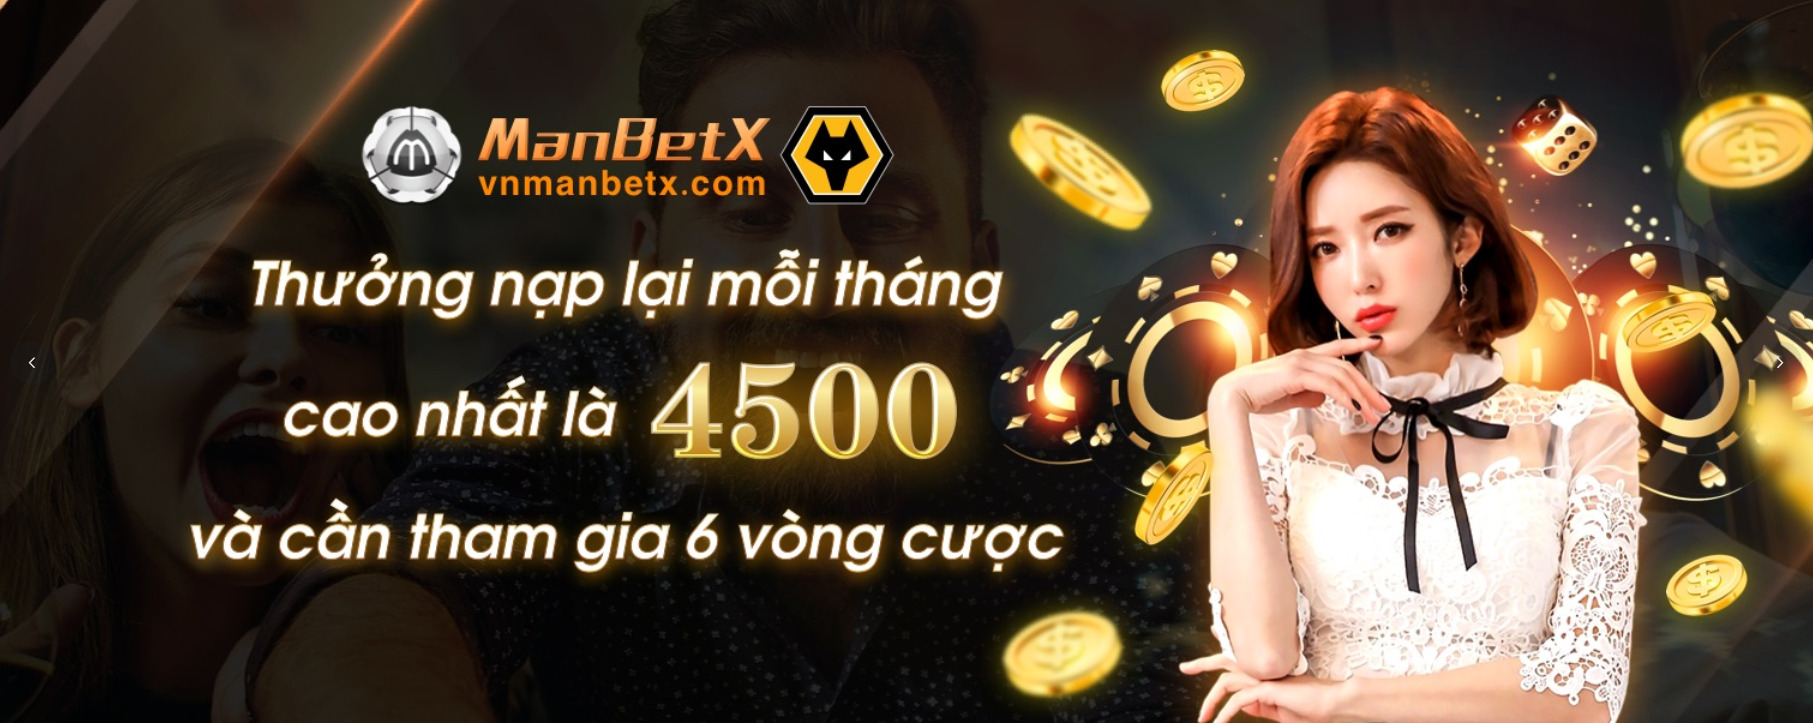 Tiền thưởng hấp dẫn từ MBX Việt Nam cho anh em